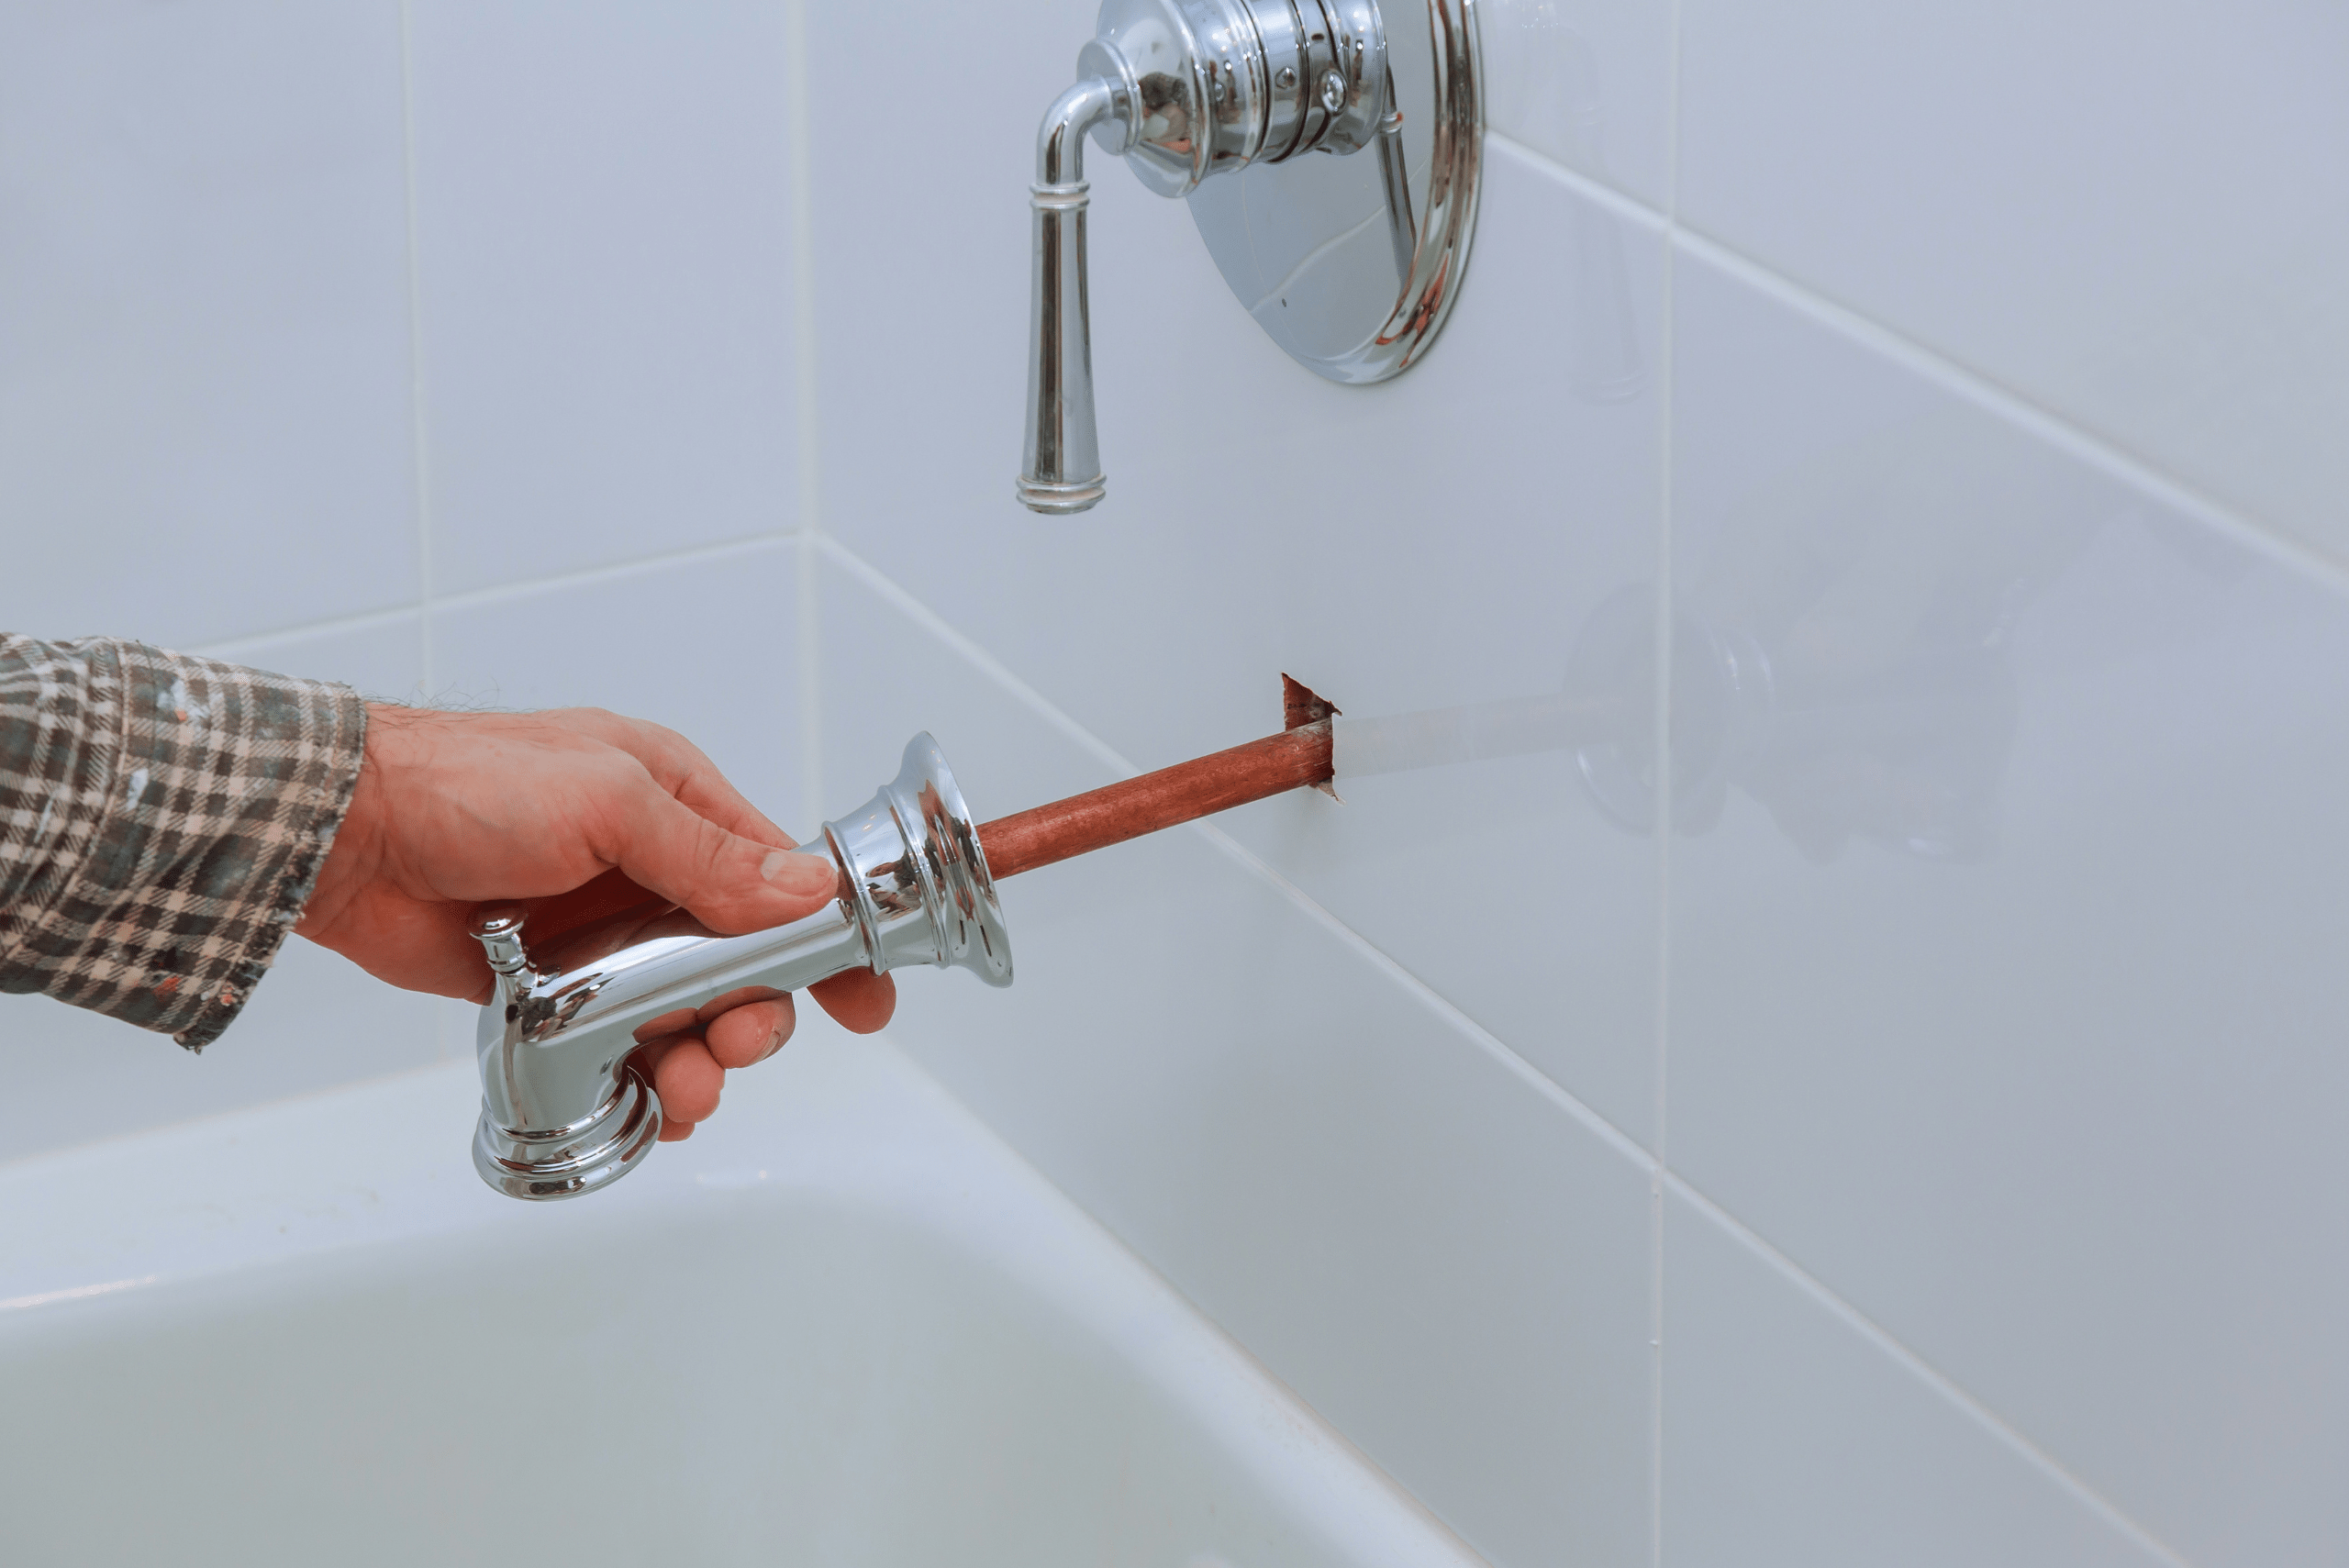 Person removing bathrub faucet.